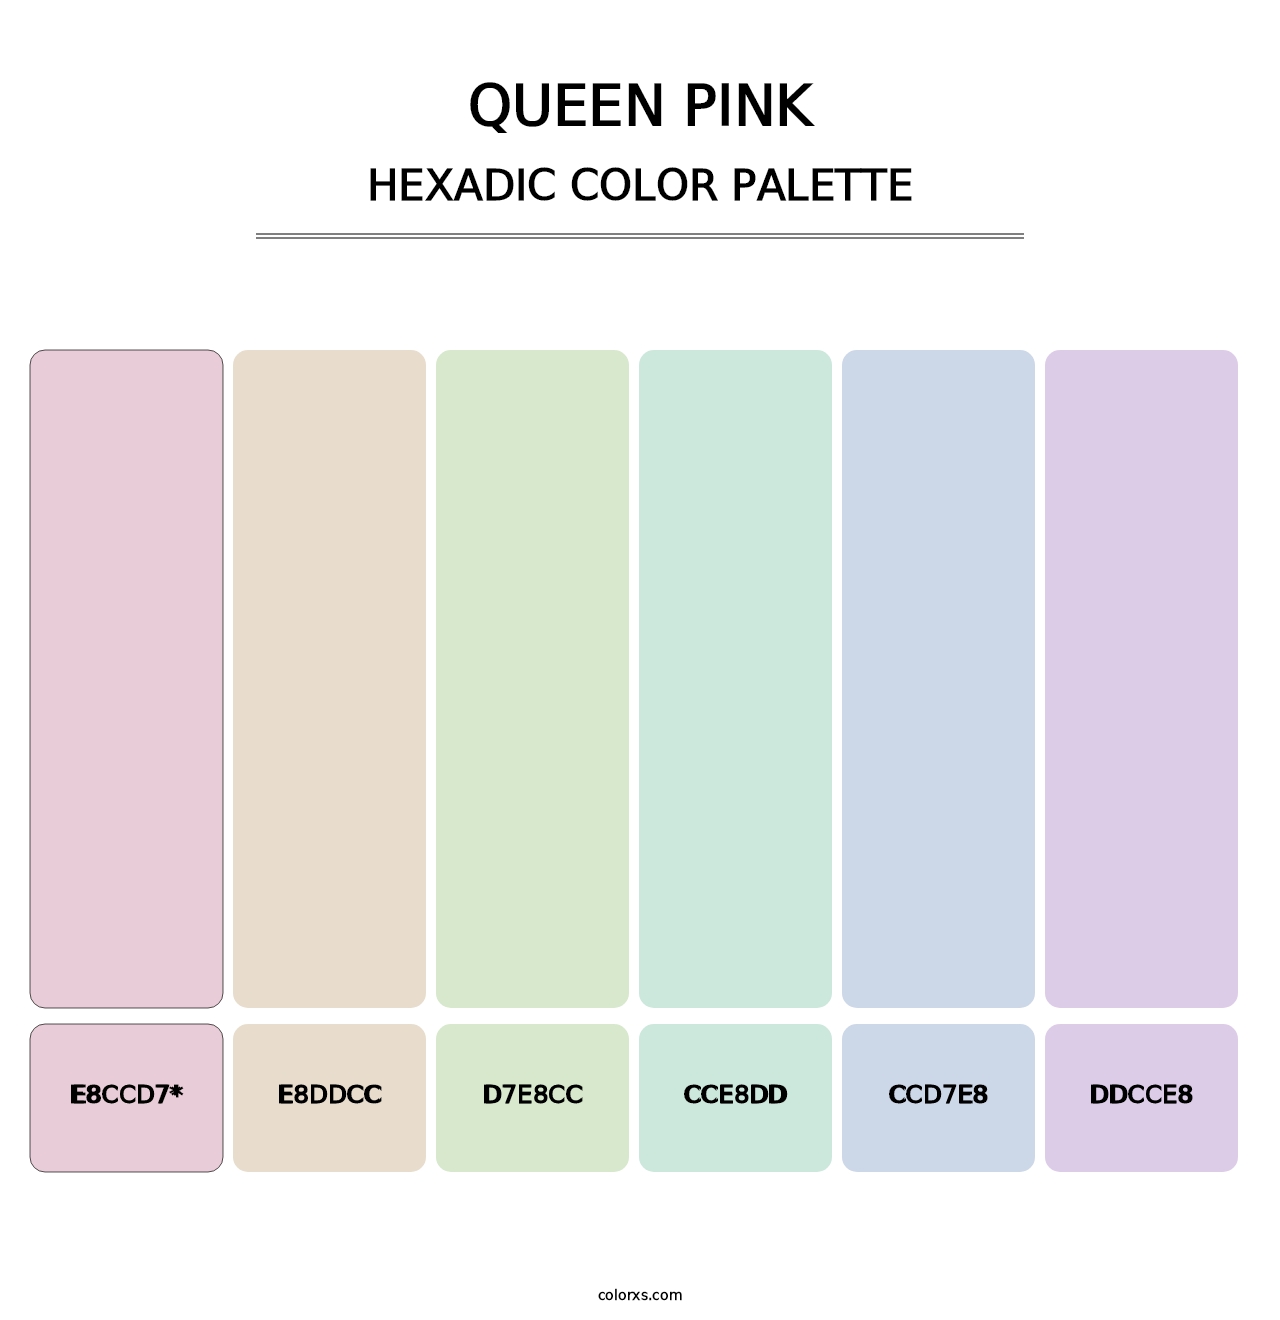 Queen Pink - Hexadic Color Palette